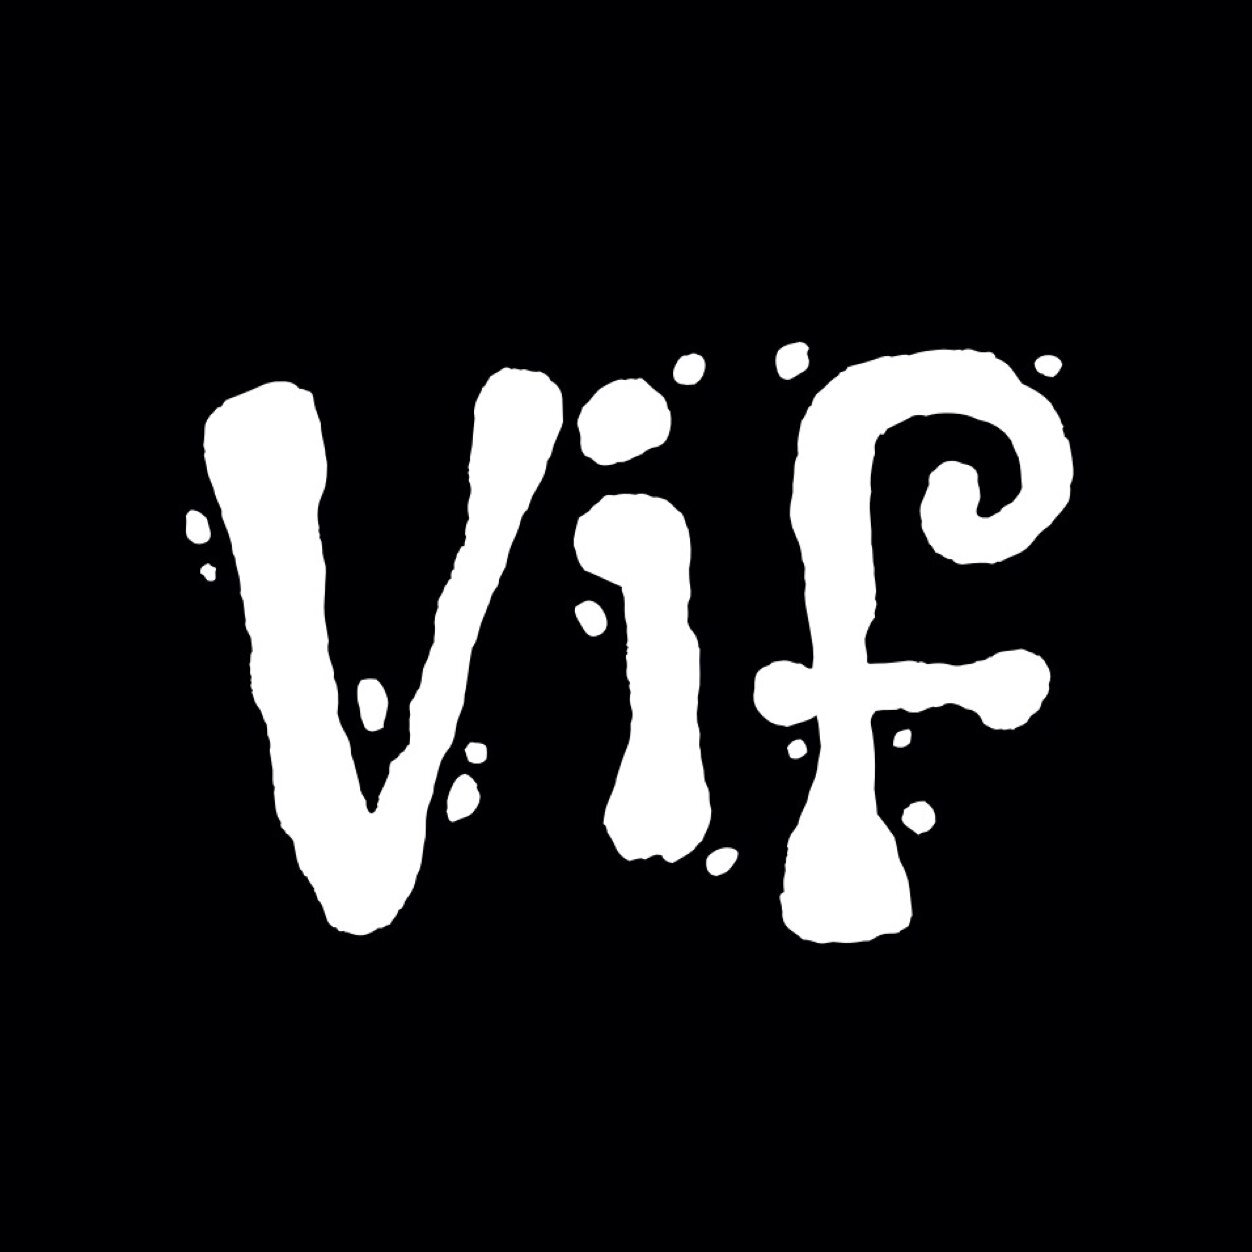 「Vif」“強烈” “鮮やか” という意味の仏語。 立命館大学のｽﾅｯﾌﾟｻｰｸﾙ